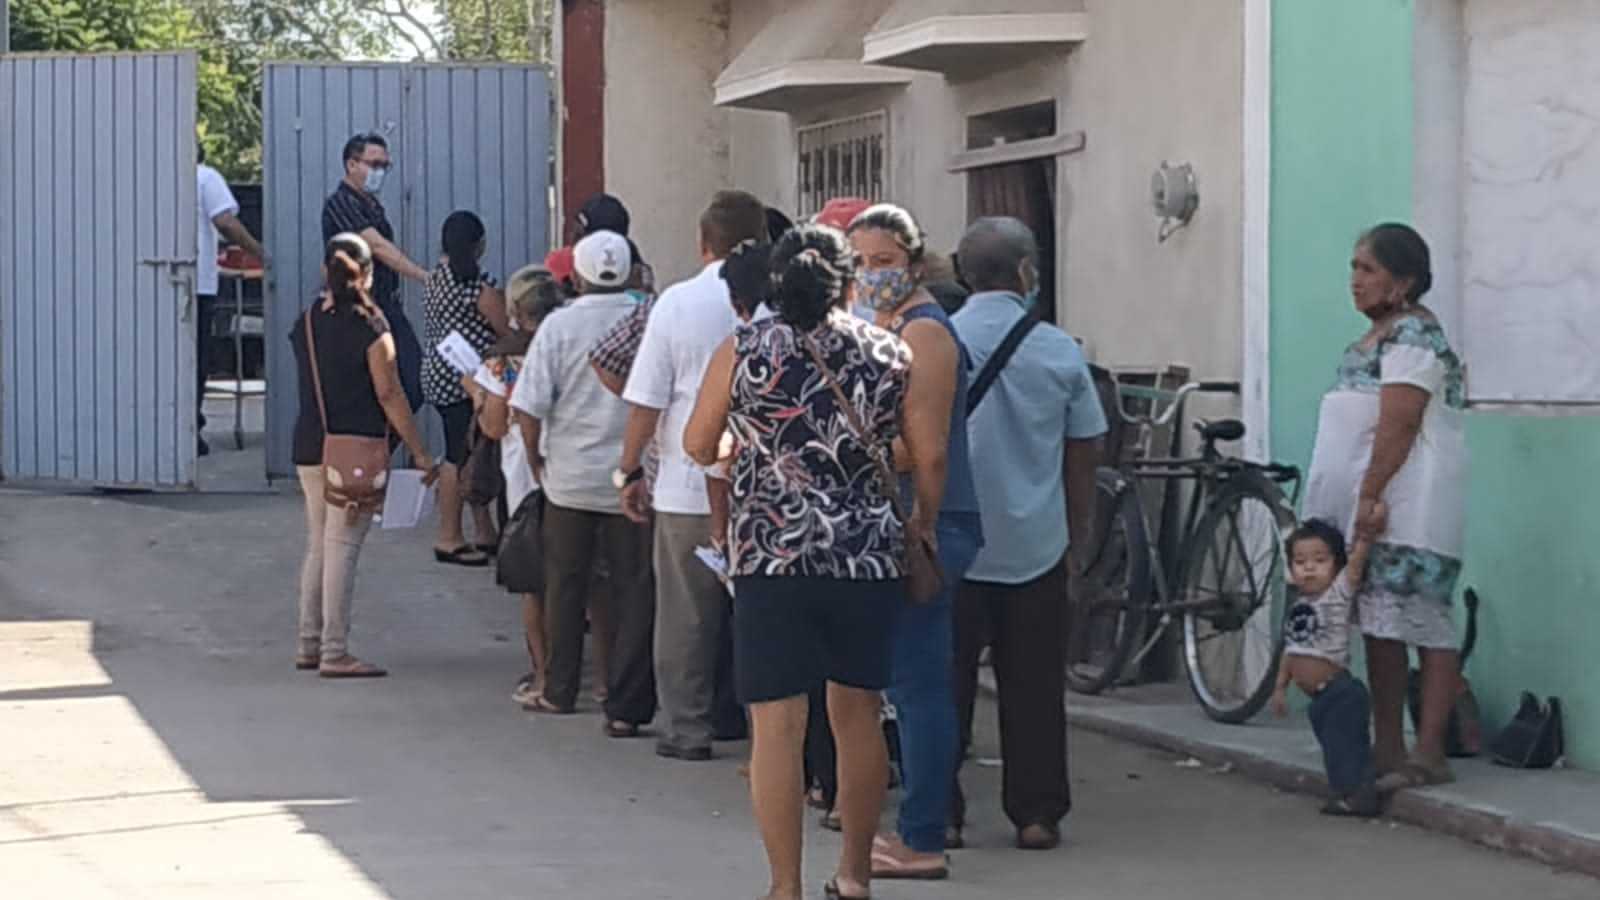 Beneficiarios de la beca "Benito Juárez" en Valladolid, enojados por la falta de organización